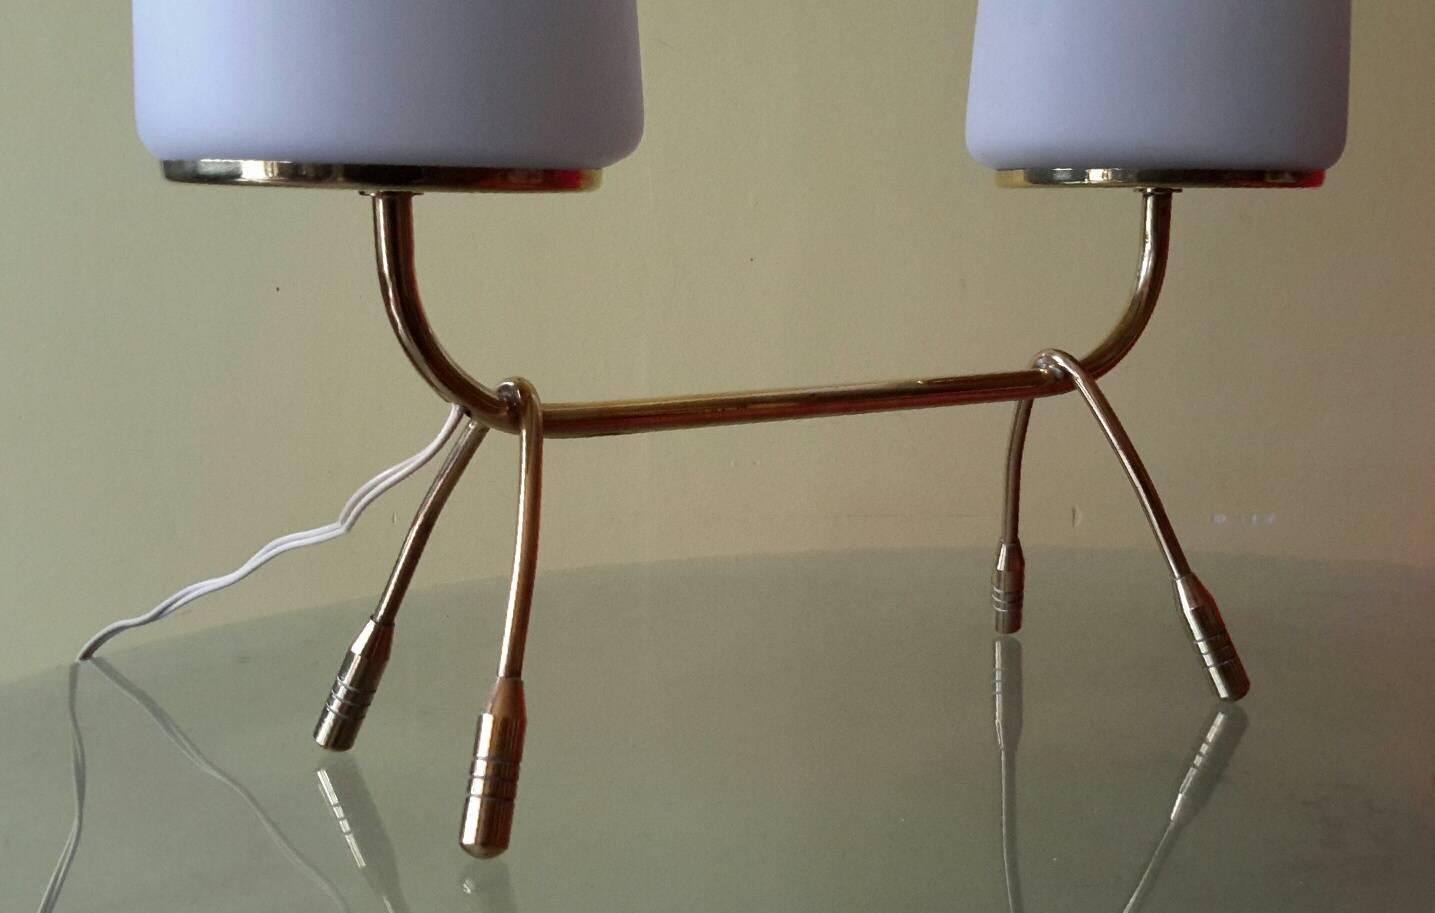 Magnifique lampe de table à structure minimaliste en laiton avec un grand diffuseur en opaline, France, années 1950
La lampe est en excellent état avec deux grands diffuseurs en opaline blanc mat.
Le câblage est conforme aux normes